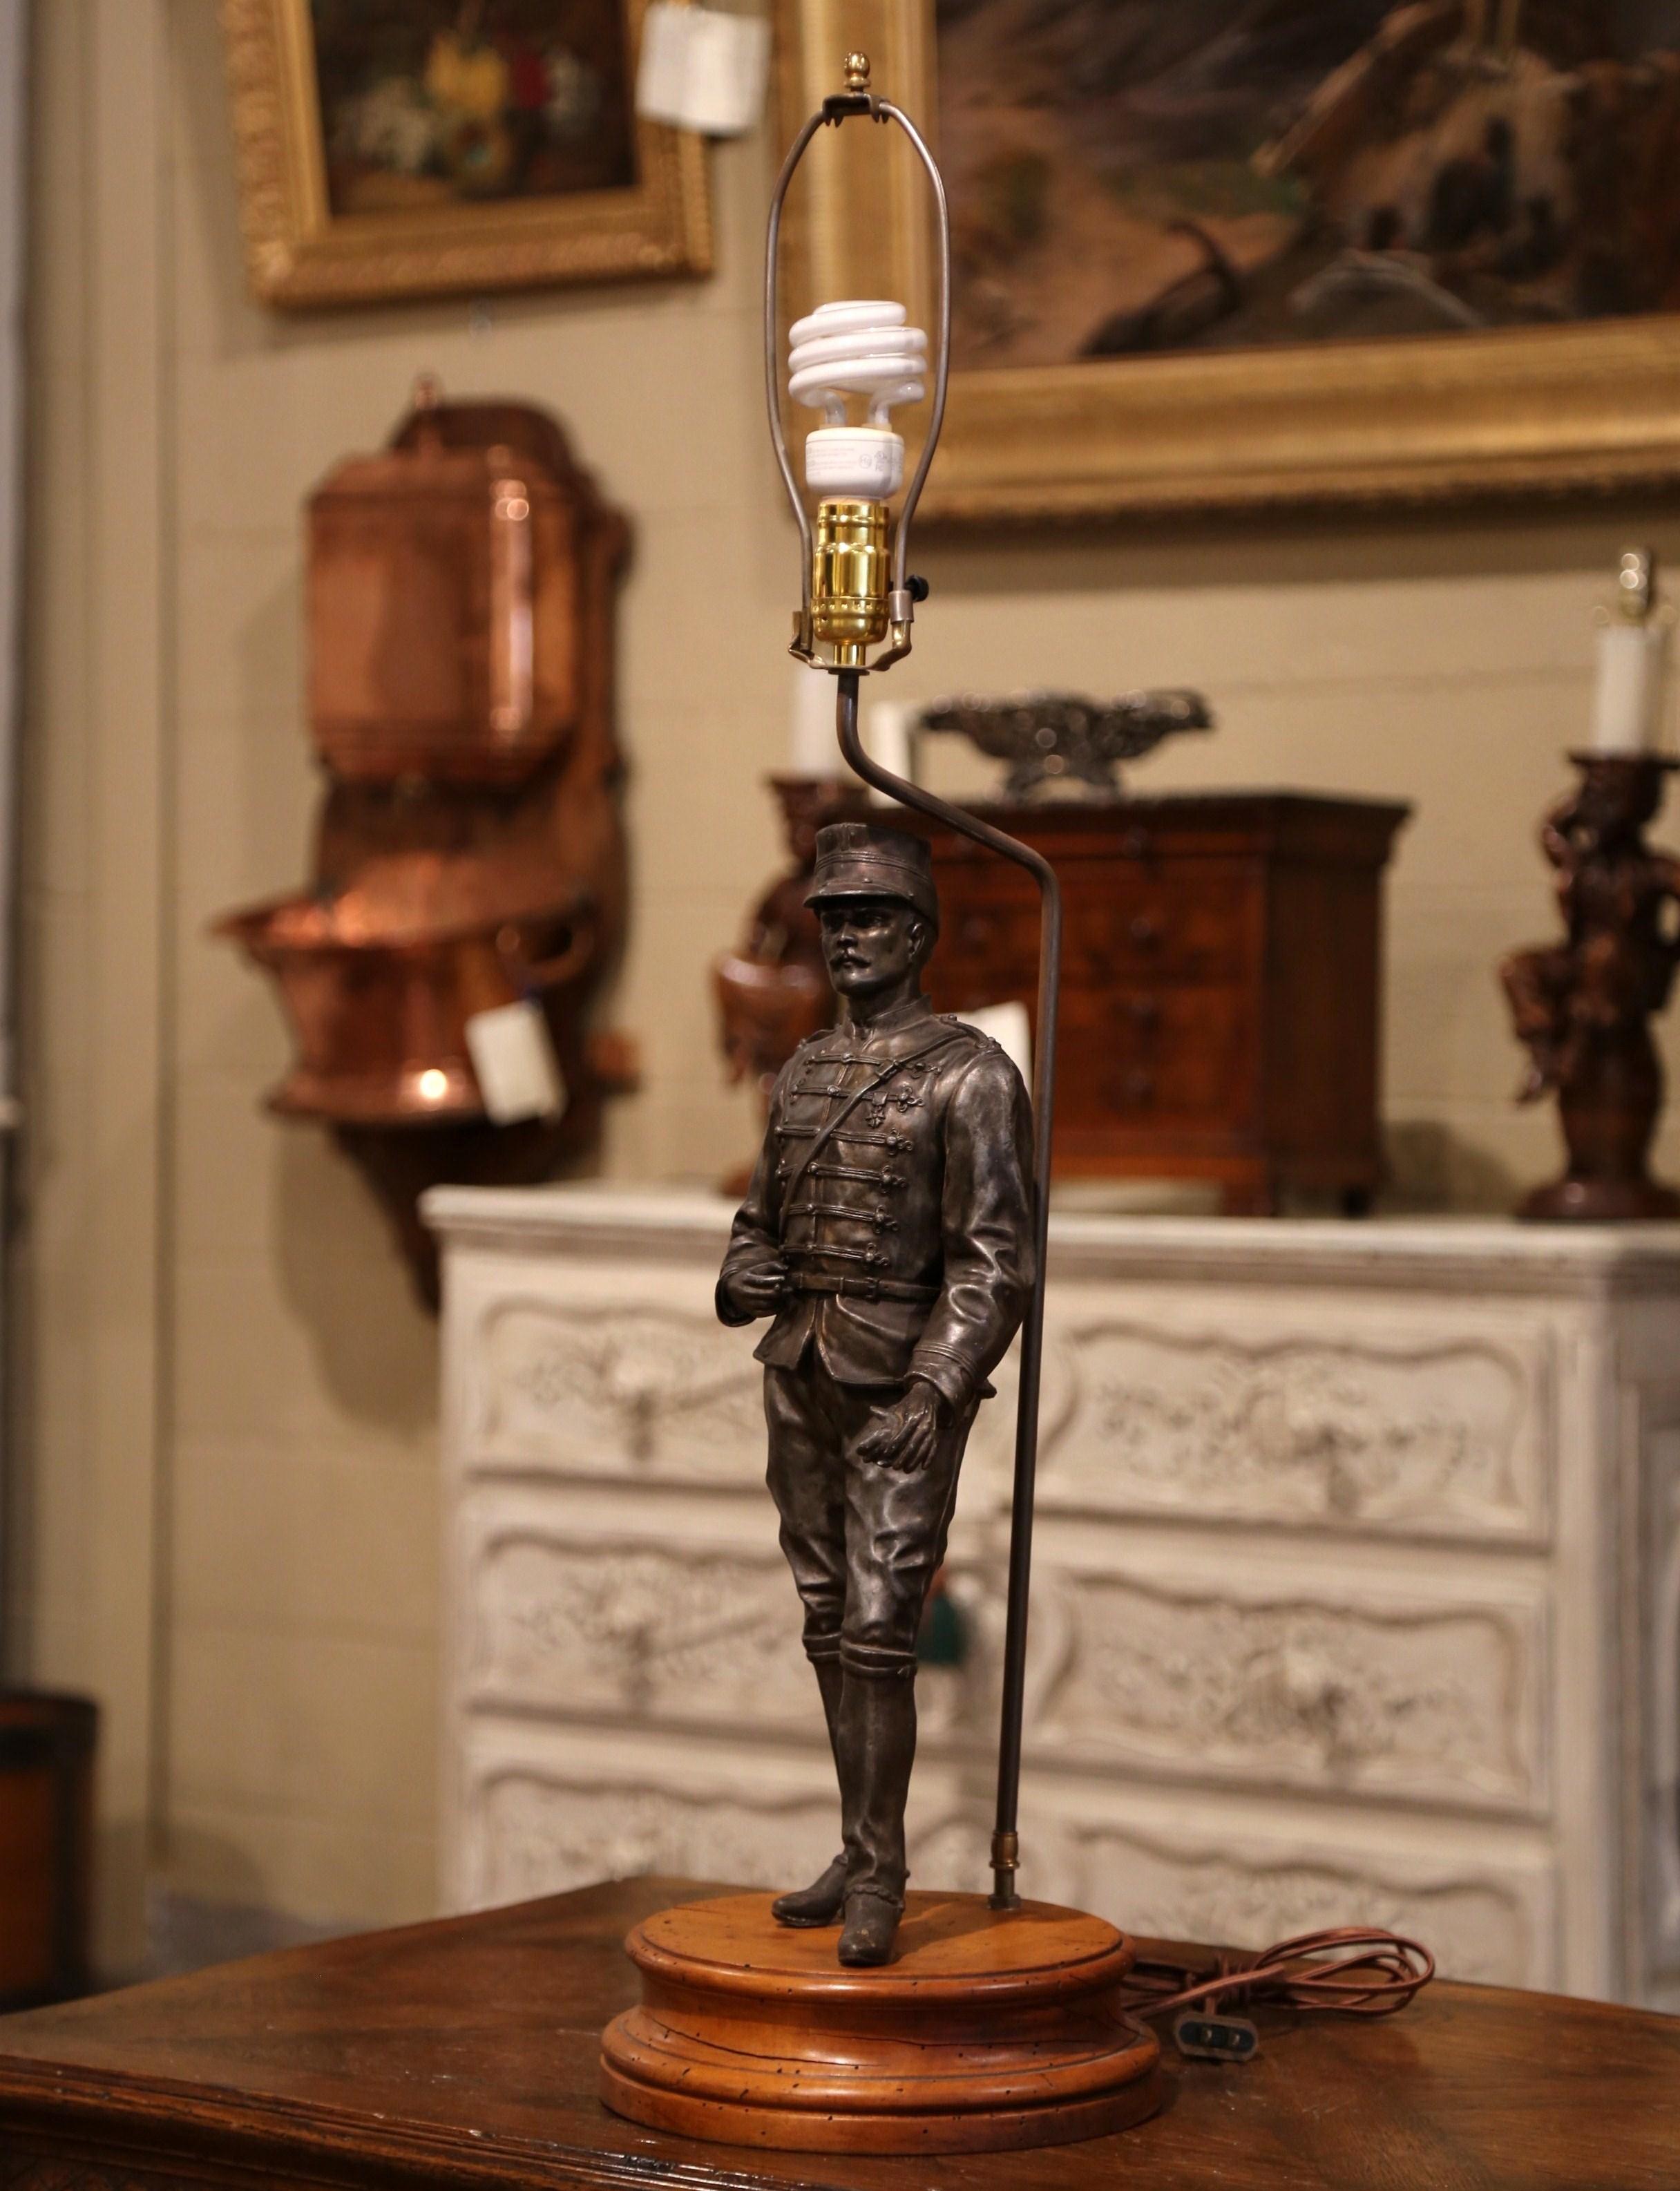 napoleon lamp